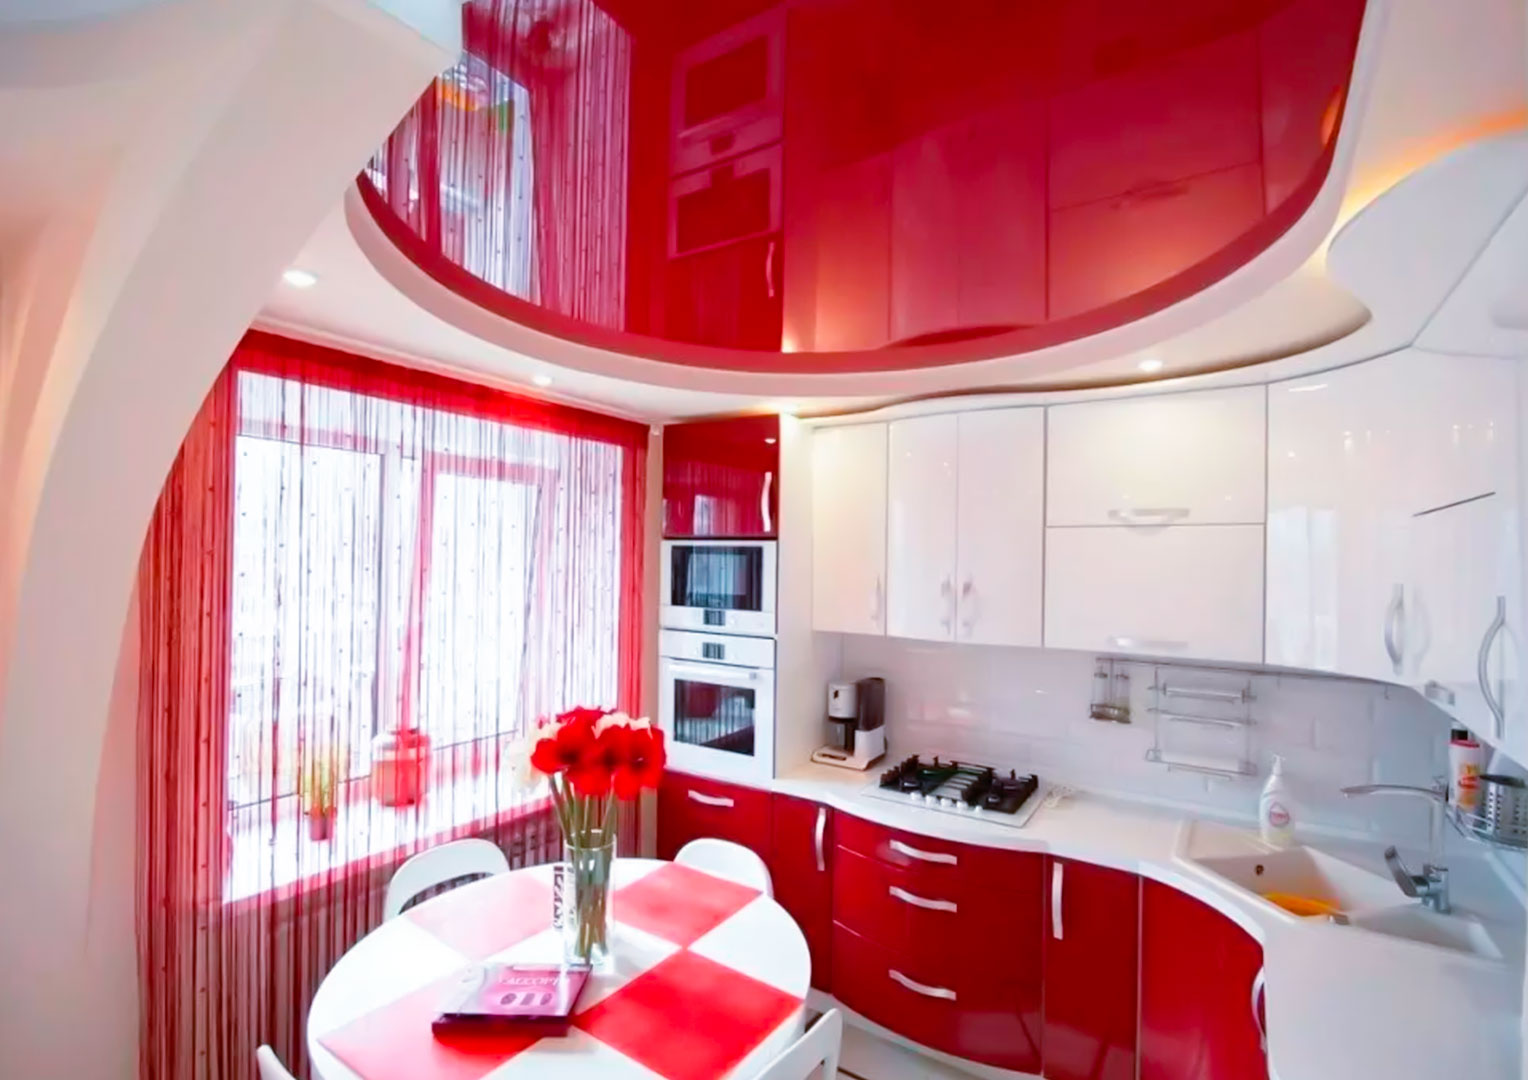 Красный 4 купить квартиру. Натяжной потолок на кухне. Многоуровневый потолок на кухне. Подвесной потолок на кухне. Кухня в потолок.